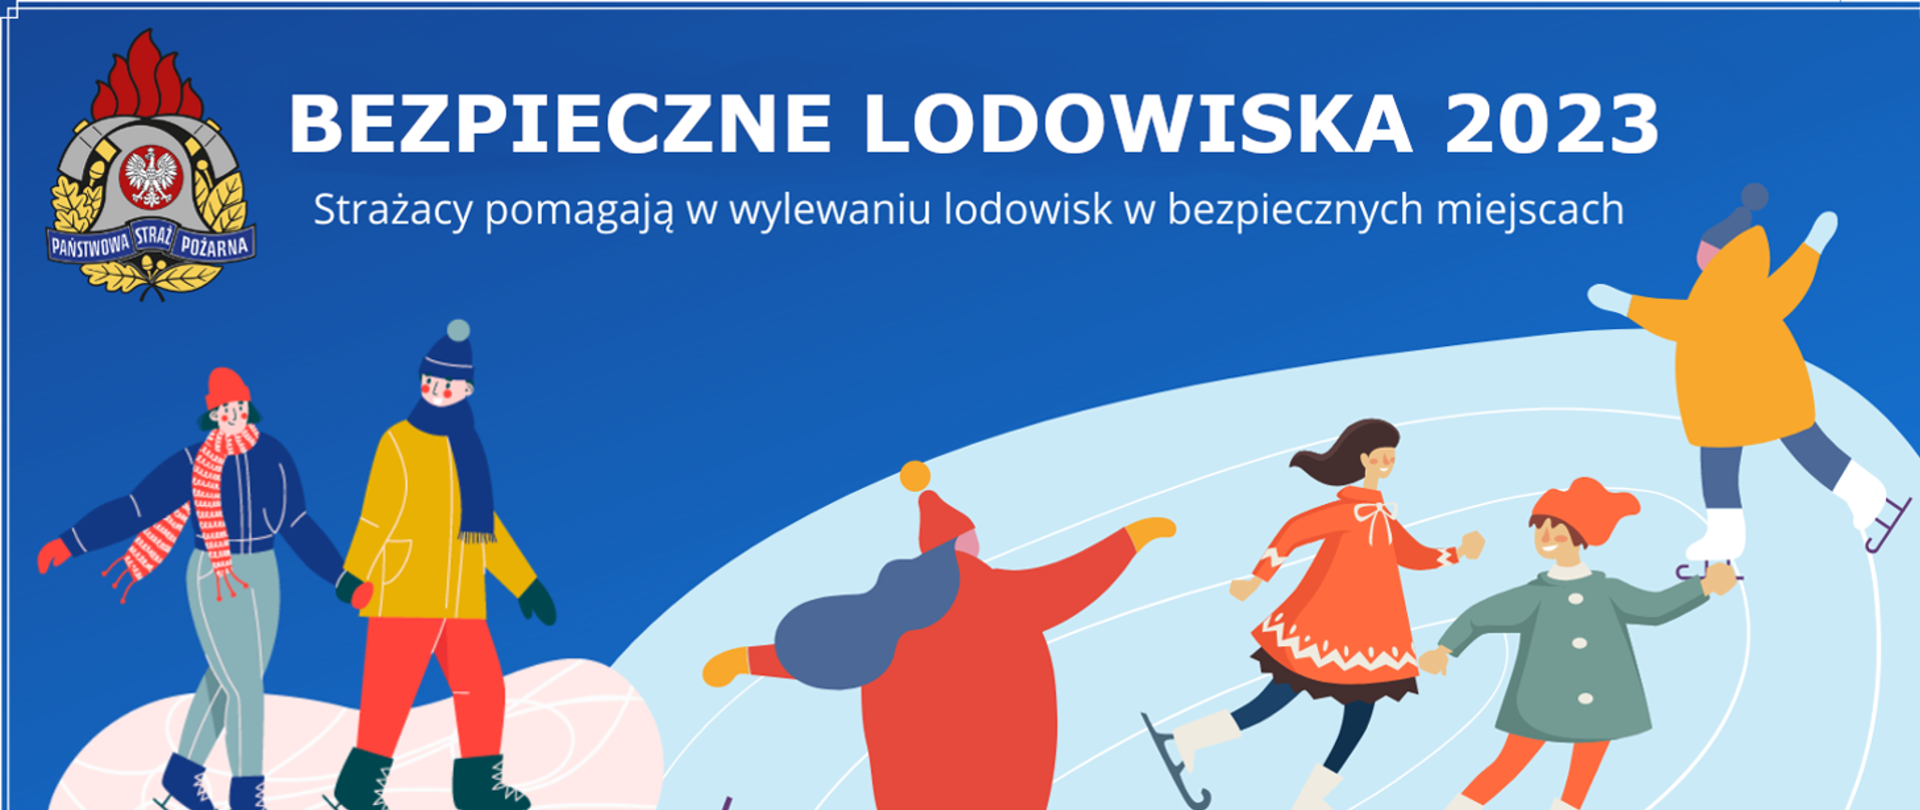 Plakat akcji Państwowej Straży Pożarnej "Bezpieczne lodowiska 2023".